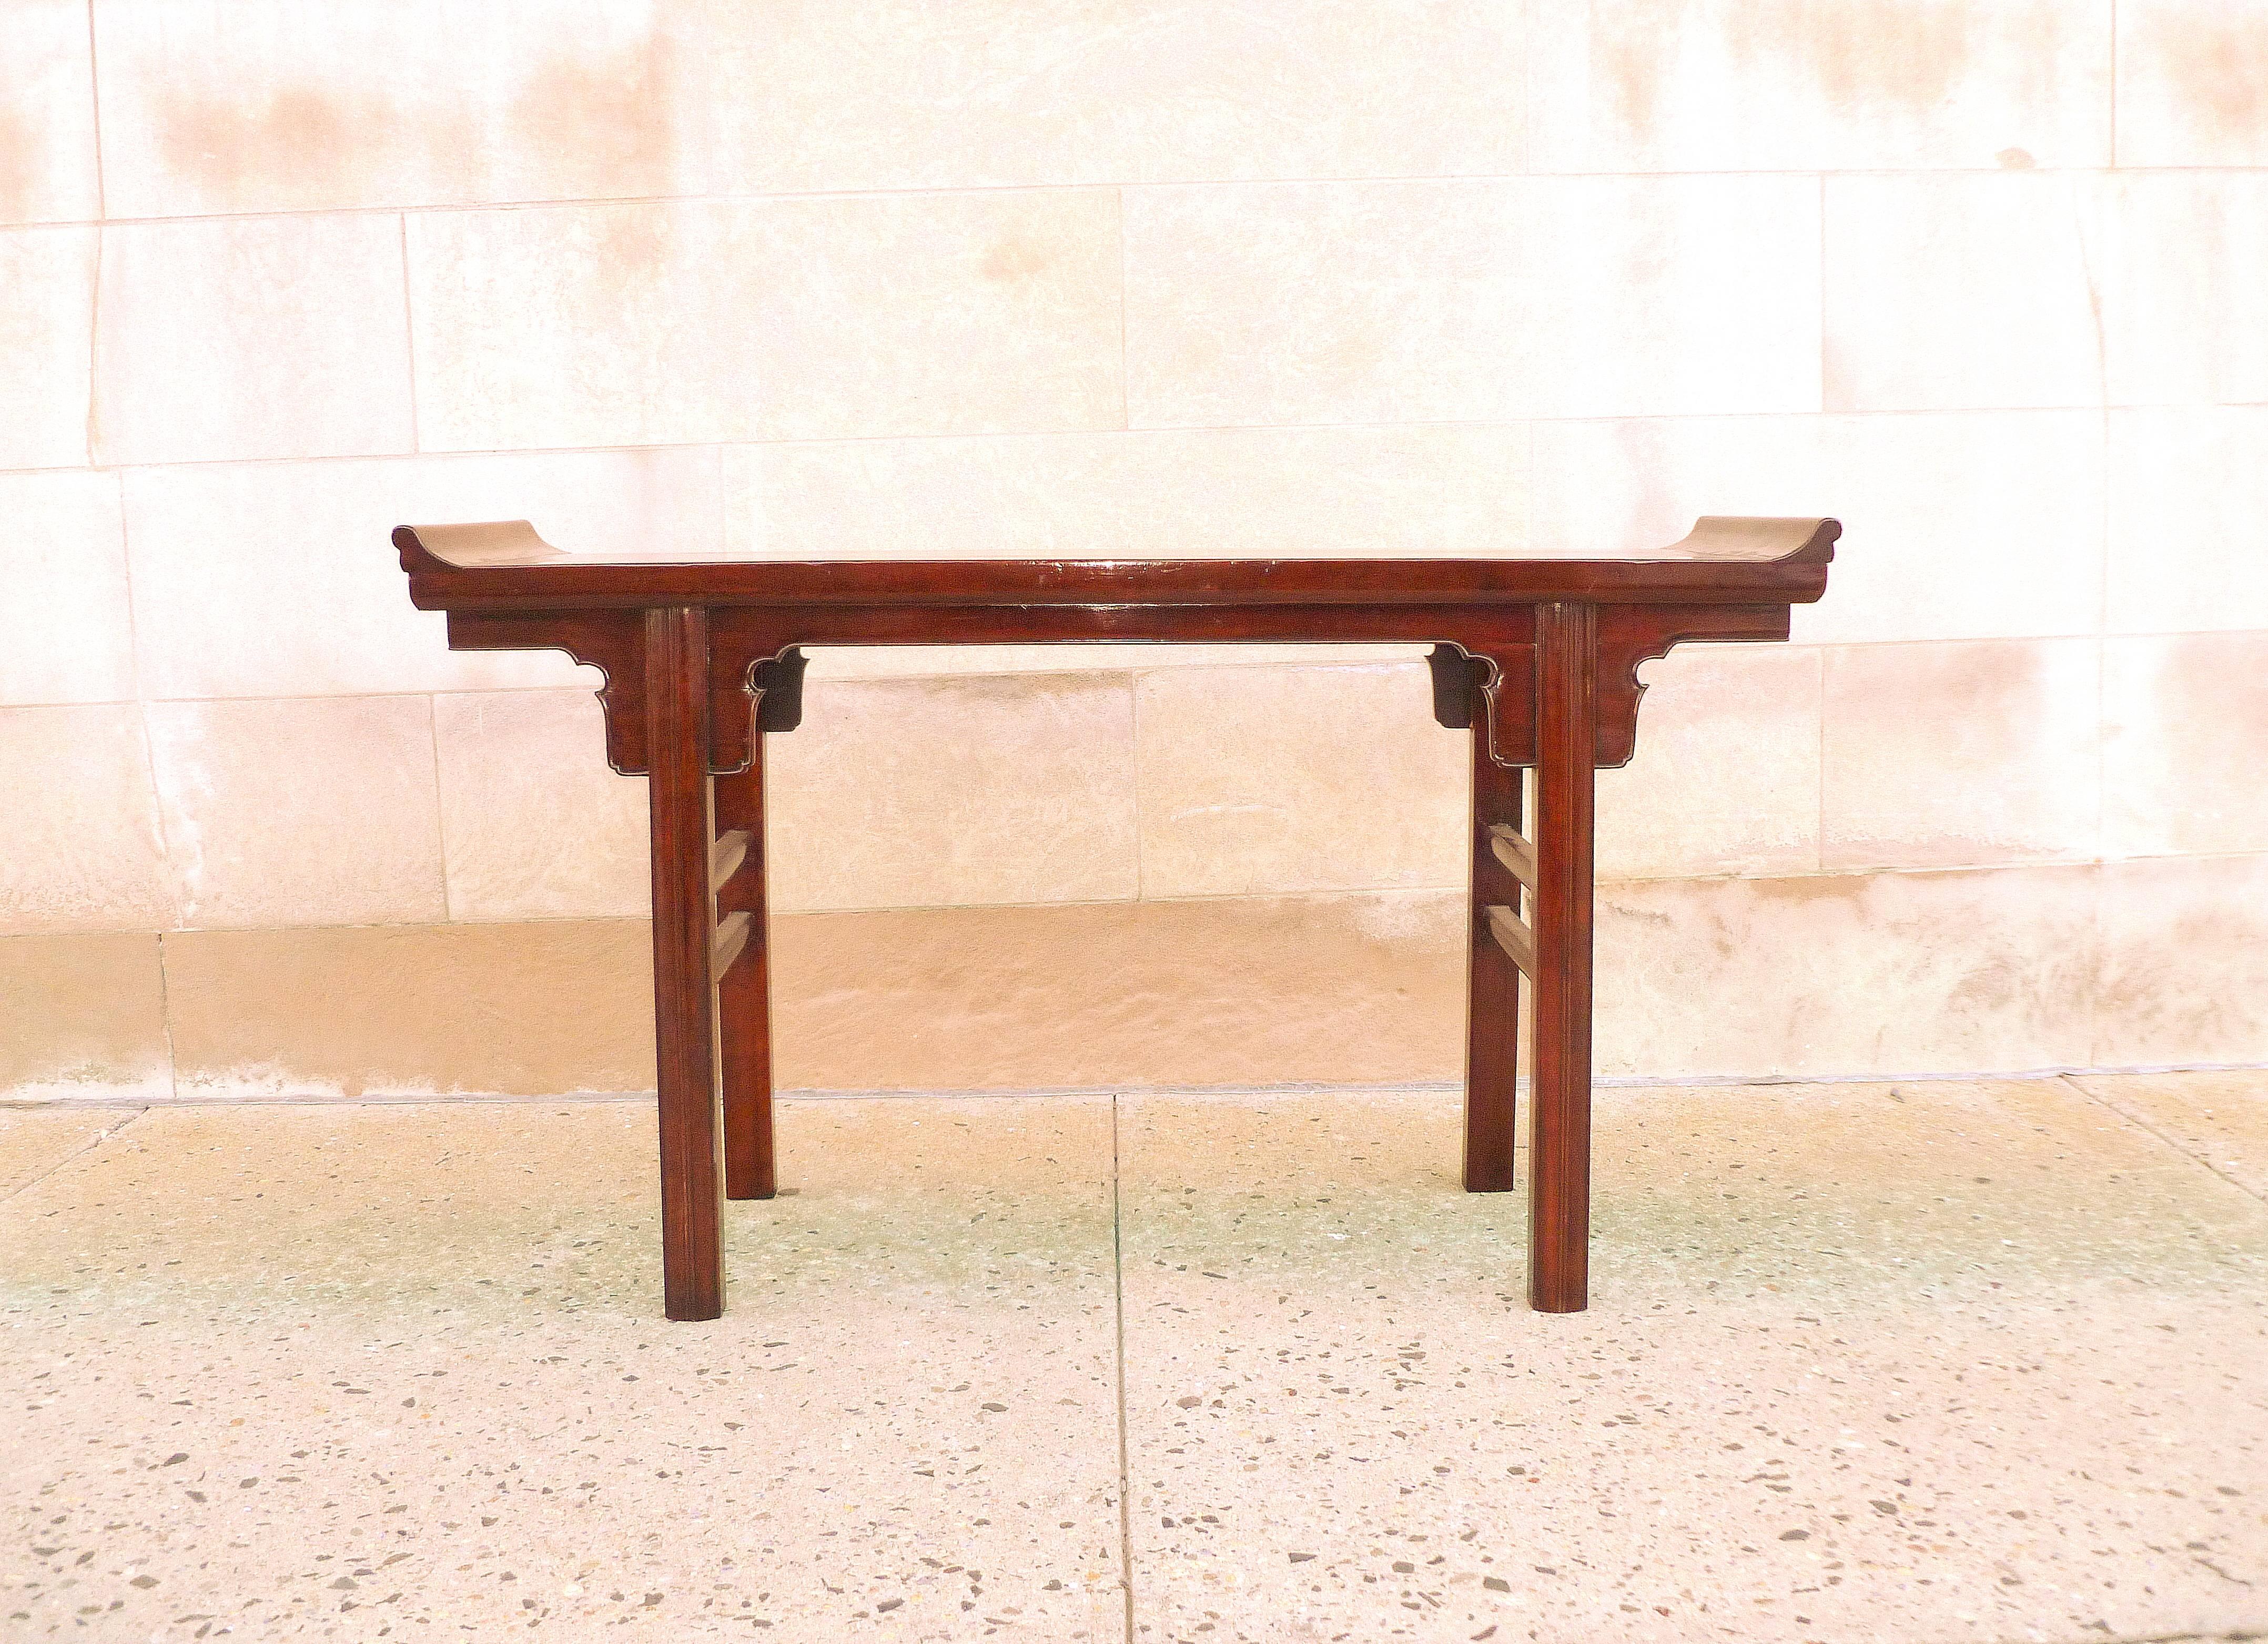 Une table d'autel raffinée en bois de ju mu avec des rebords éversés, soutenue par des pieds droits, belle couleur, forme et lignes. Nous proposons des meubles de qualité aux finitions élégantes, qui ont été publiés à plusieurs reprises dans les